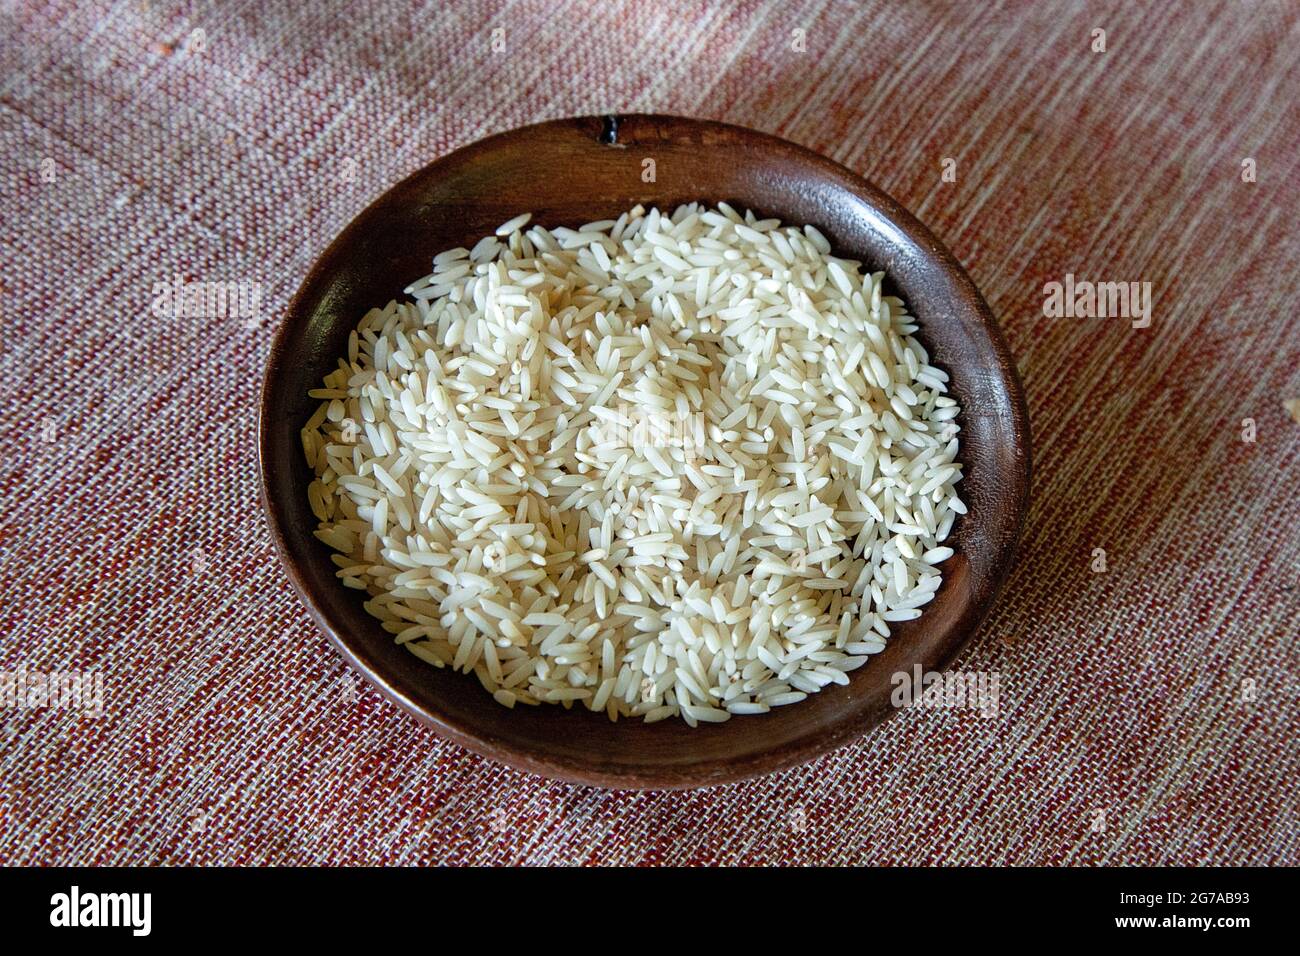 Una parte importante della cucina persiana è il riso, il miglior riso al  mondo, il riso Sadri. La vendemmia si svolge da aprile a fine luglio e  principalmente nelle province di Gilan